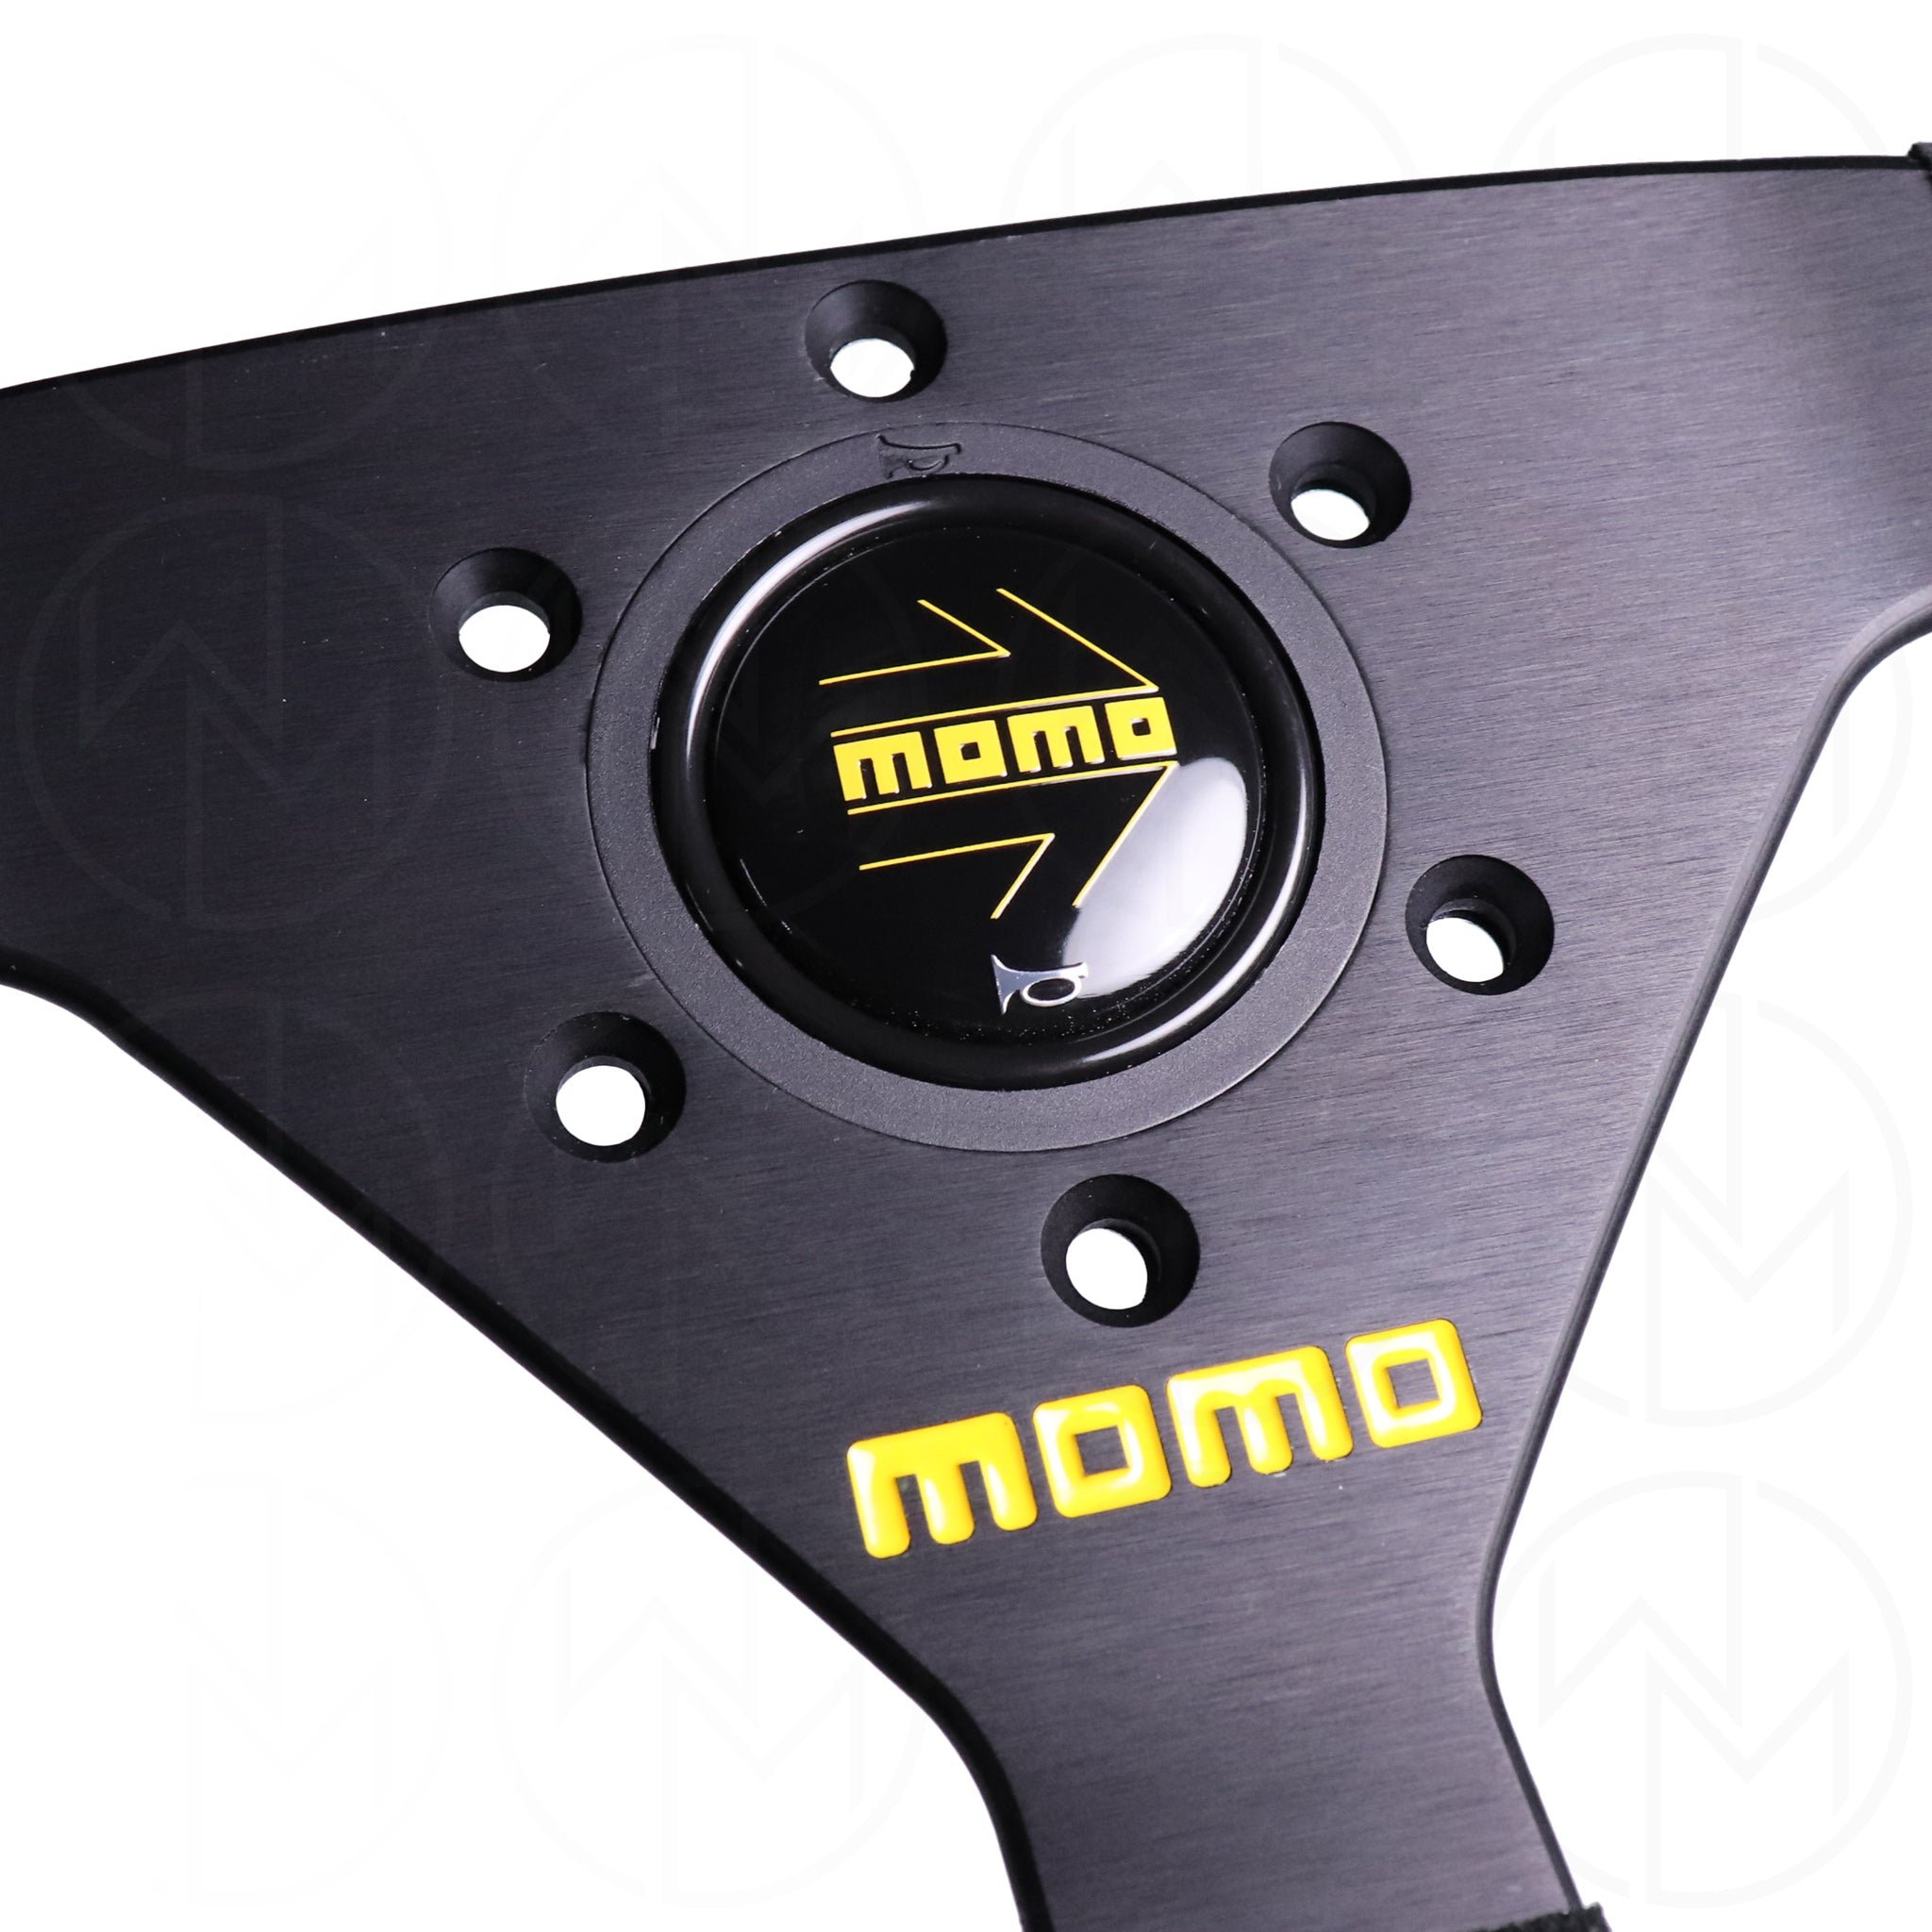 Momo Mod. 78 Steering Wheel - 330mm Suede